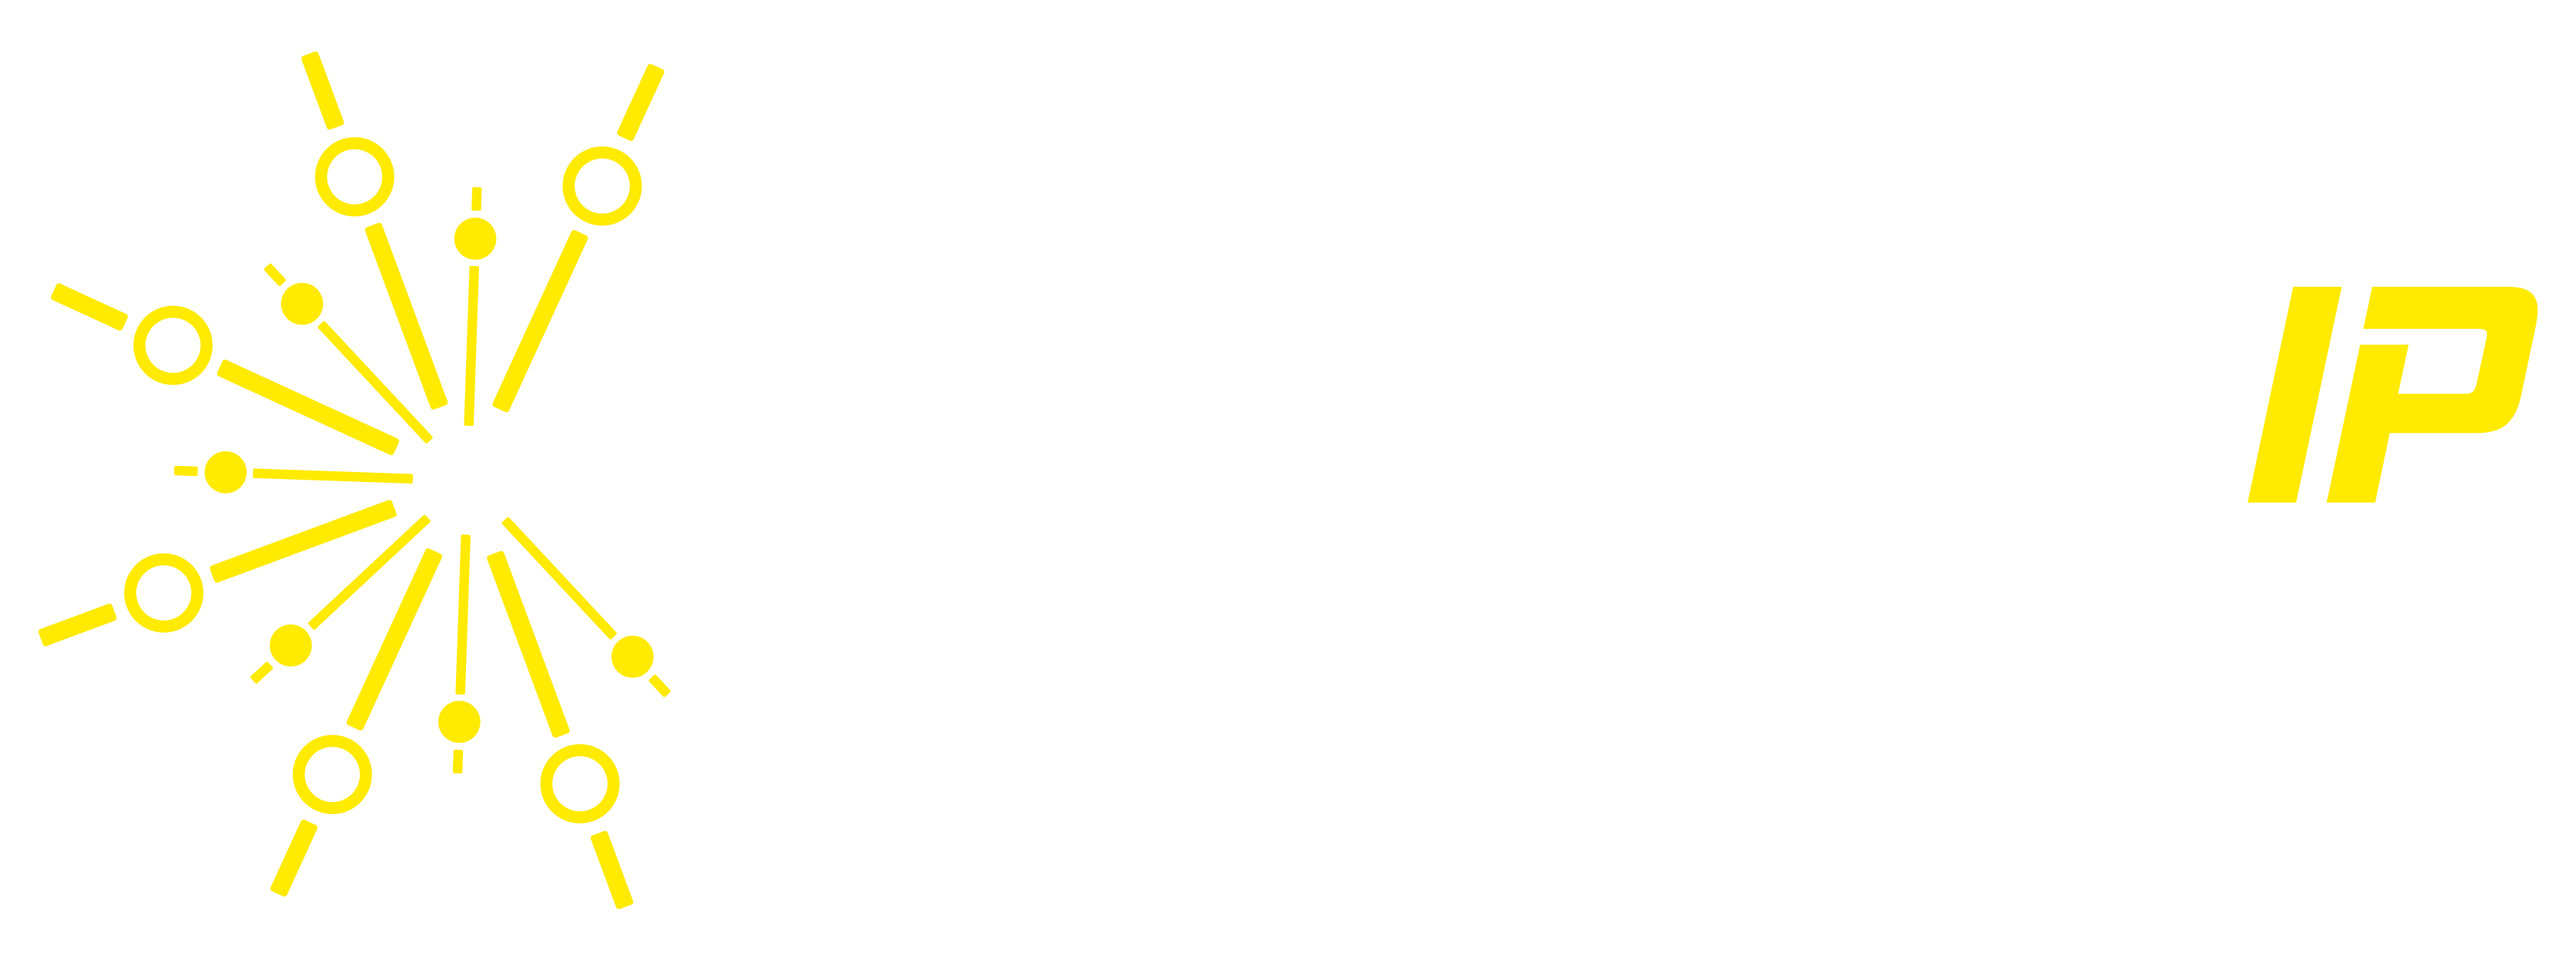 SparkplugIP